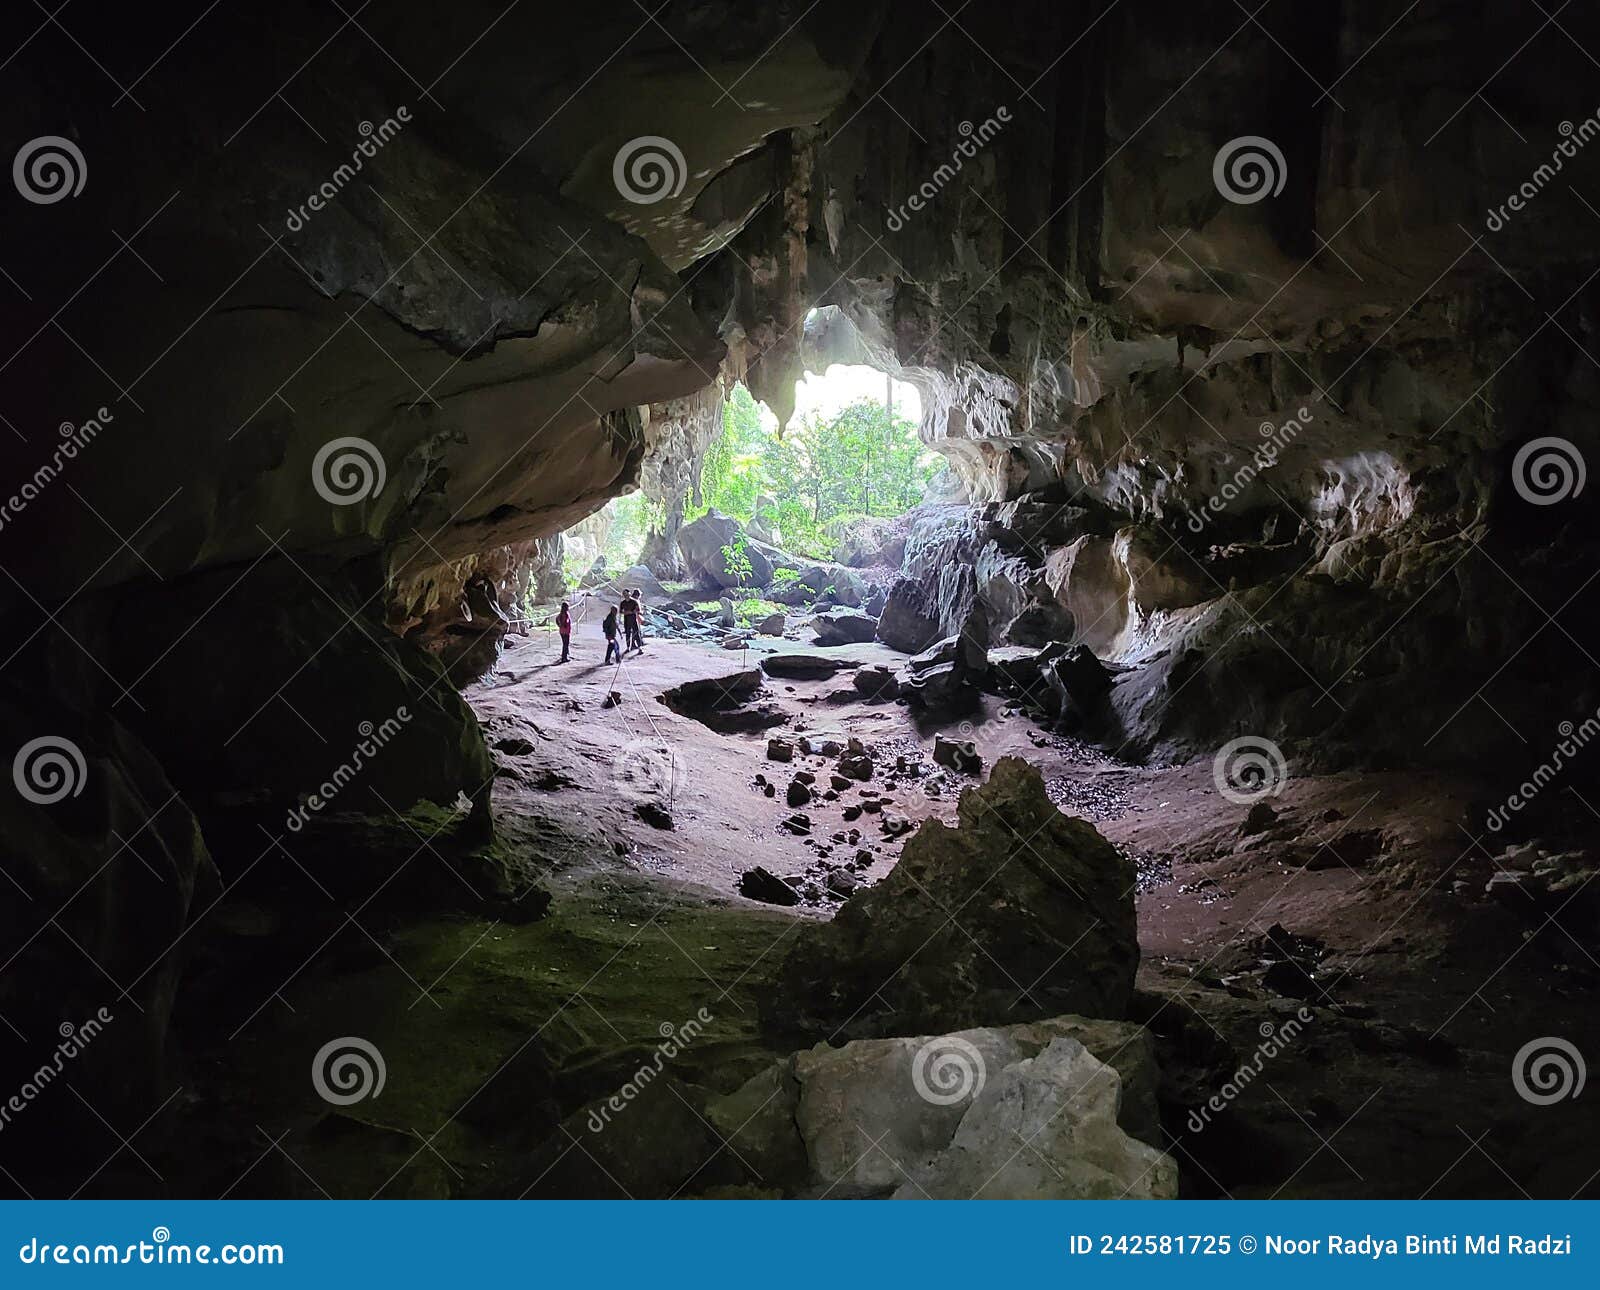 view inside gua pagar in dabong, kelantan, malaysia.